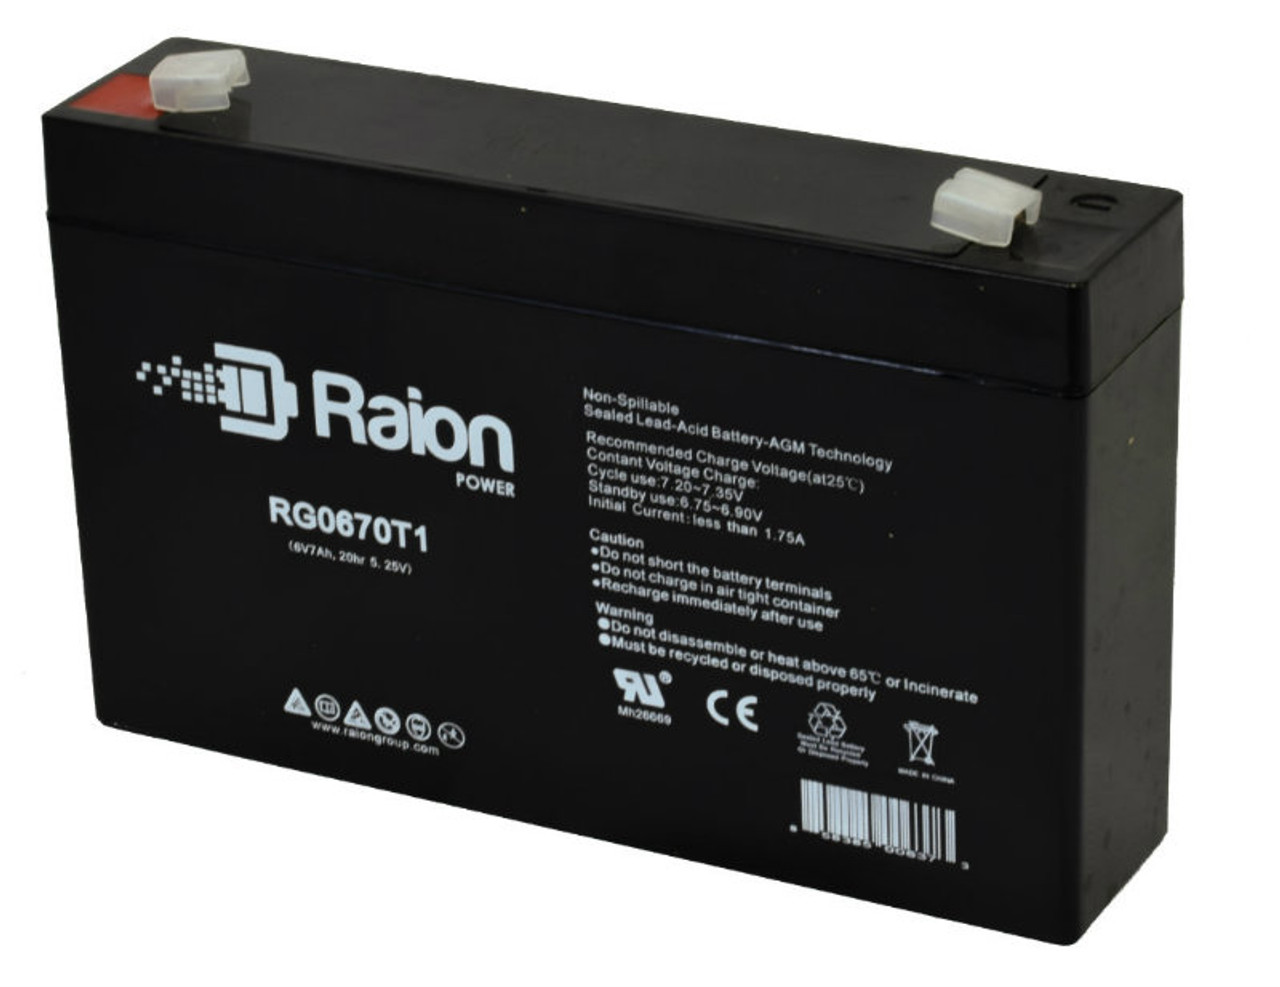 Raion Power RG0670T1 Replacement Battery for Kinghero SJ6V8Ah OEM Battery